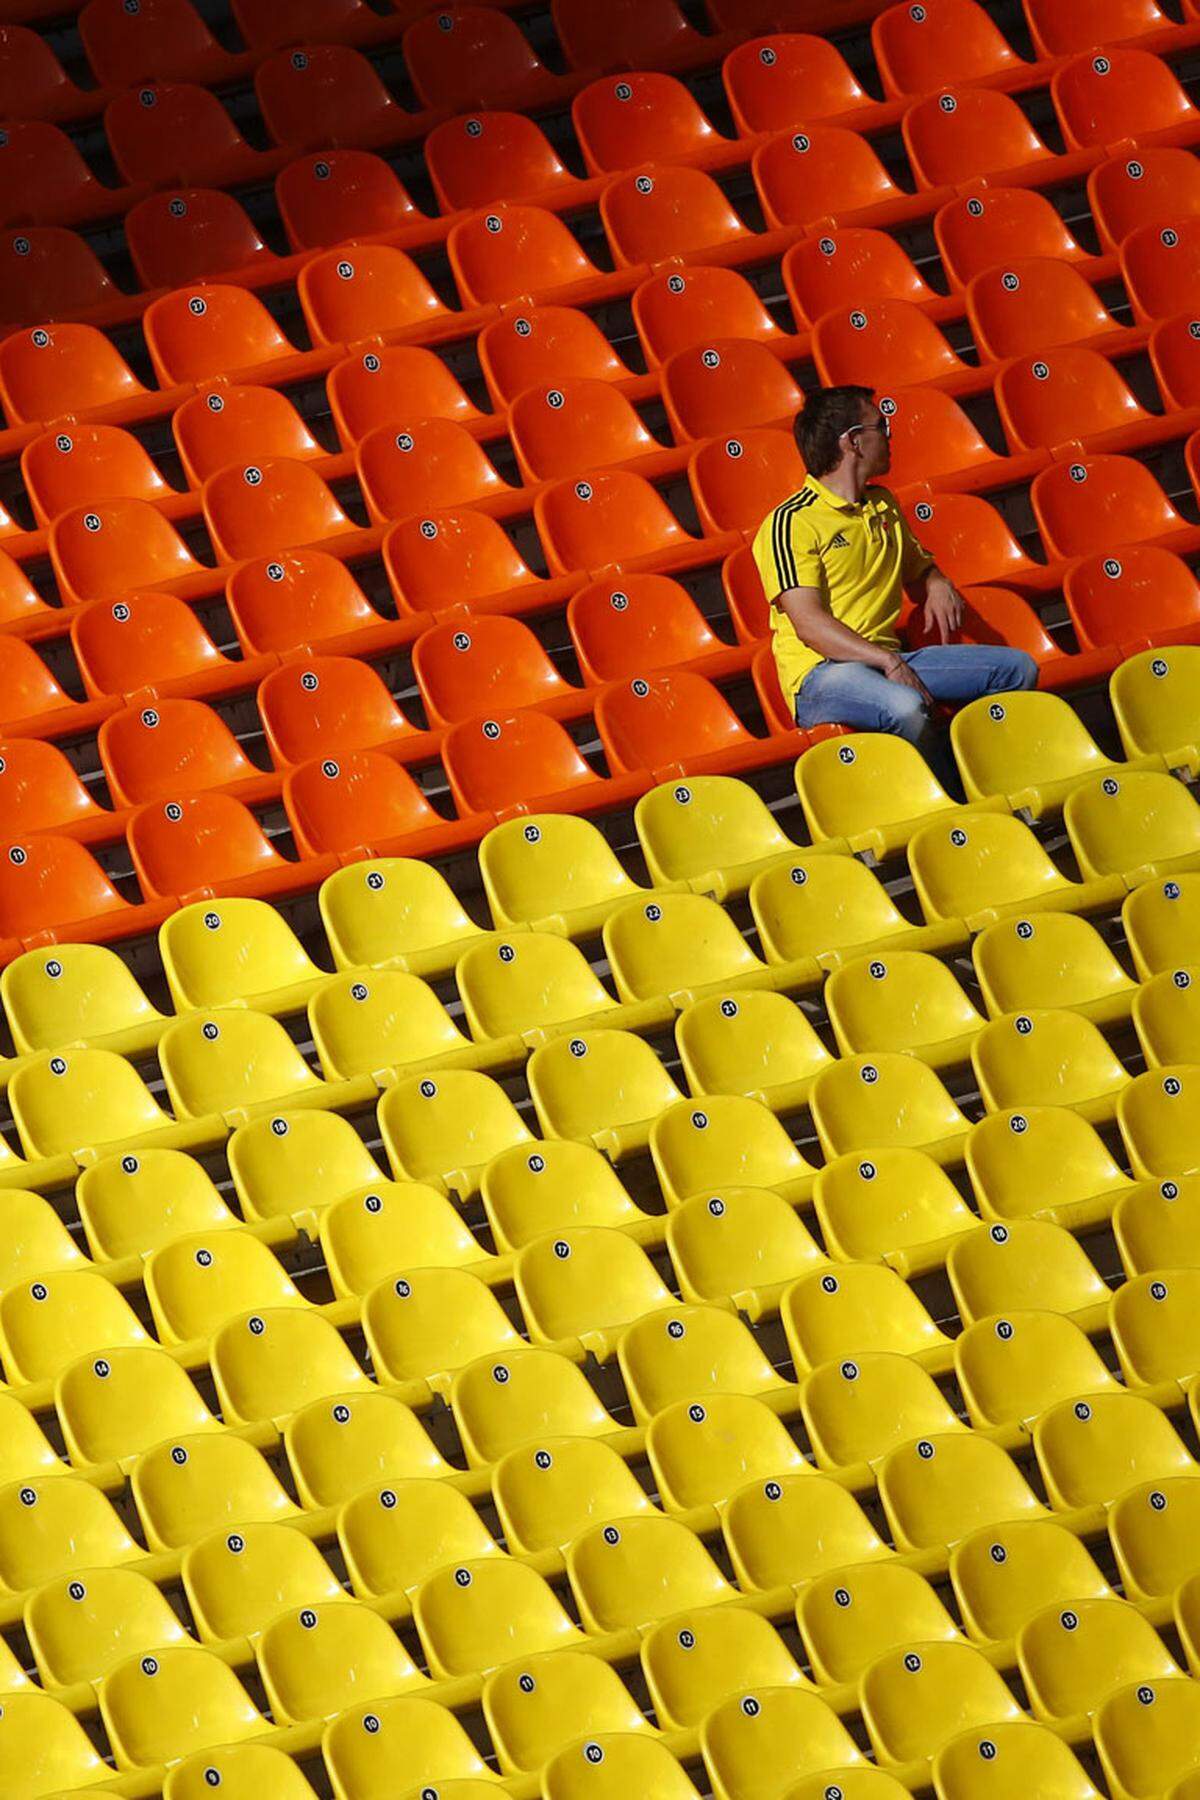 Moskau hat zwar zwölf Millionen Einwohner, aber selbst das hat bis jetzt bei der Leichtathletik-WM noch nicht ausgereicht, das Luschniki-Stadion zu füllen. Auch bei den bisherigen Highlights von Bolt und der einheimischen Isinbajewa im Stabhochsprung war die rund 85.000 Zuschauer fassende Arena nur zu drei Viertel voll. Ausreden gibt es keine, denn: Die billigste Karte kostet 150 Rubel (3,42 Euro), alle Plätze sind überdacht. Das Stadion ist zwar alt, aber ein immer noch herzeigbar, das Wetter ist gut und das Gastgeberland auch mit Medaillenchancen bedacht.